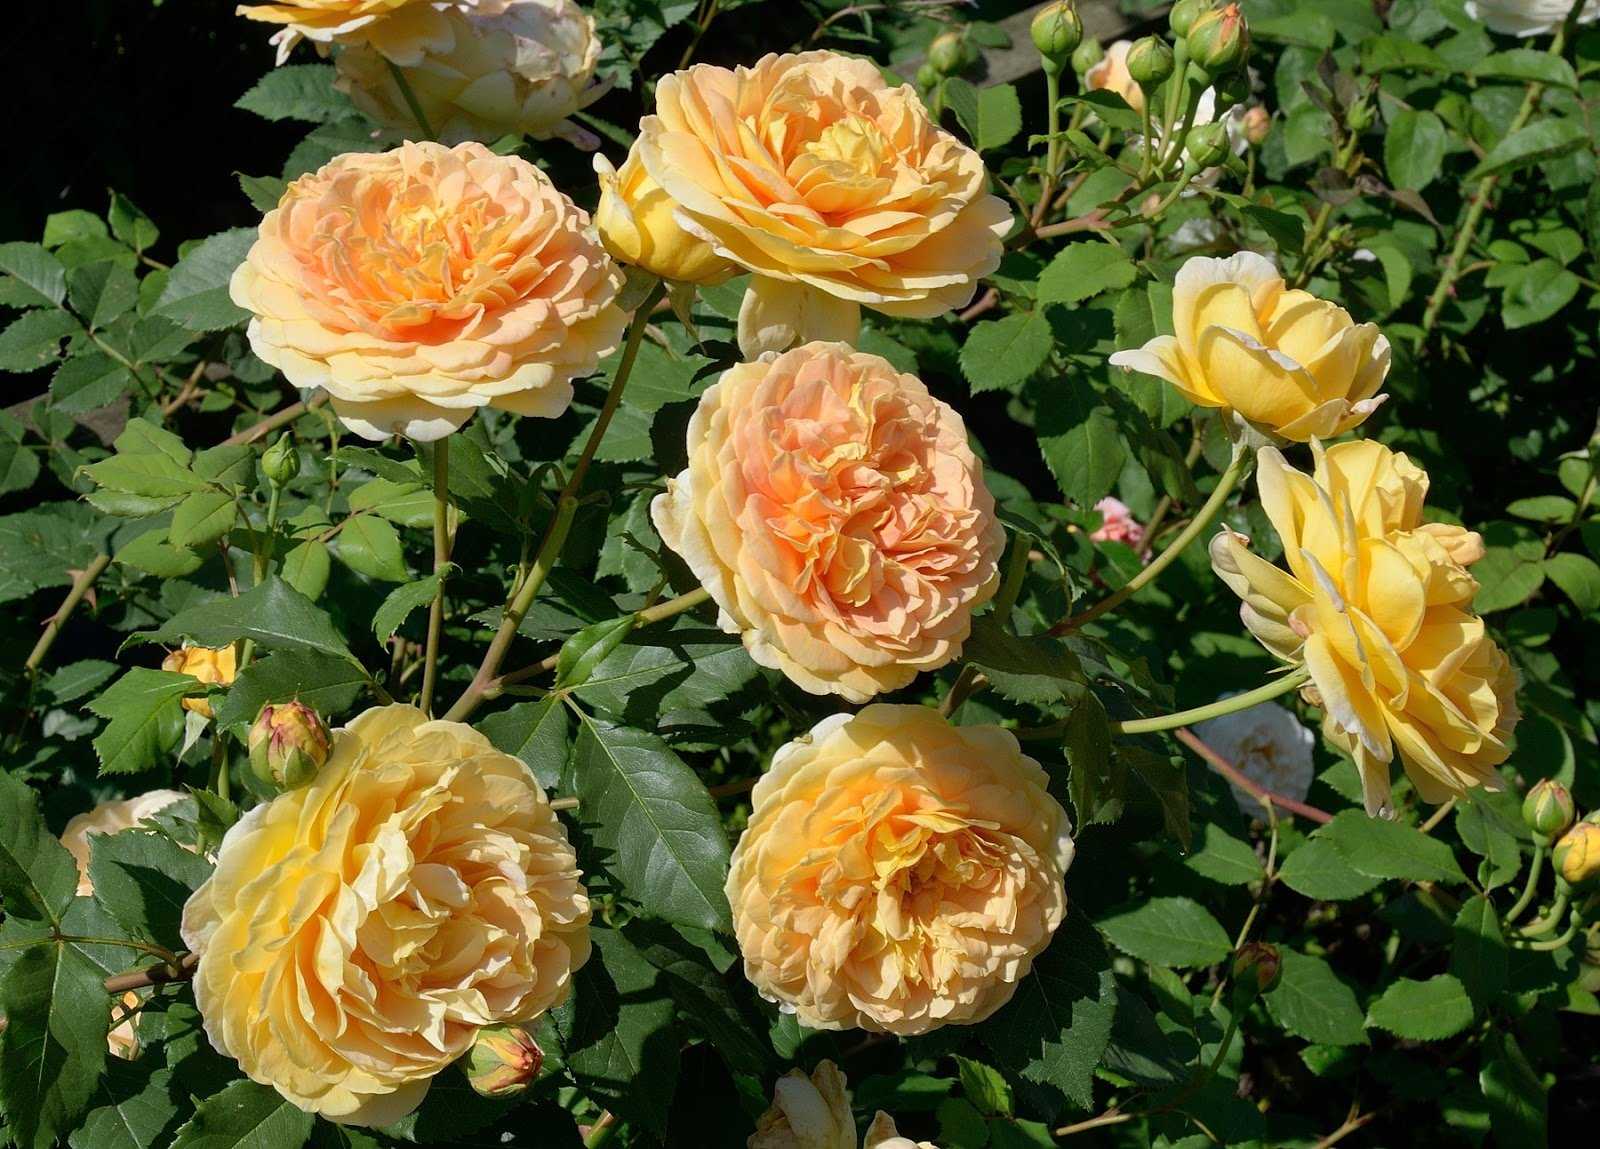 Роза голден селебрейшен (golden selebration): фото и подробное описание сорта, выращивание, уход за цветком, болезни и вредители, использование в ландшафтном дизайне